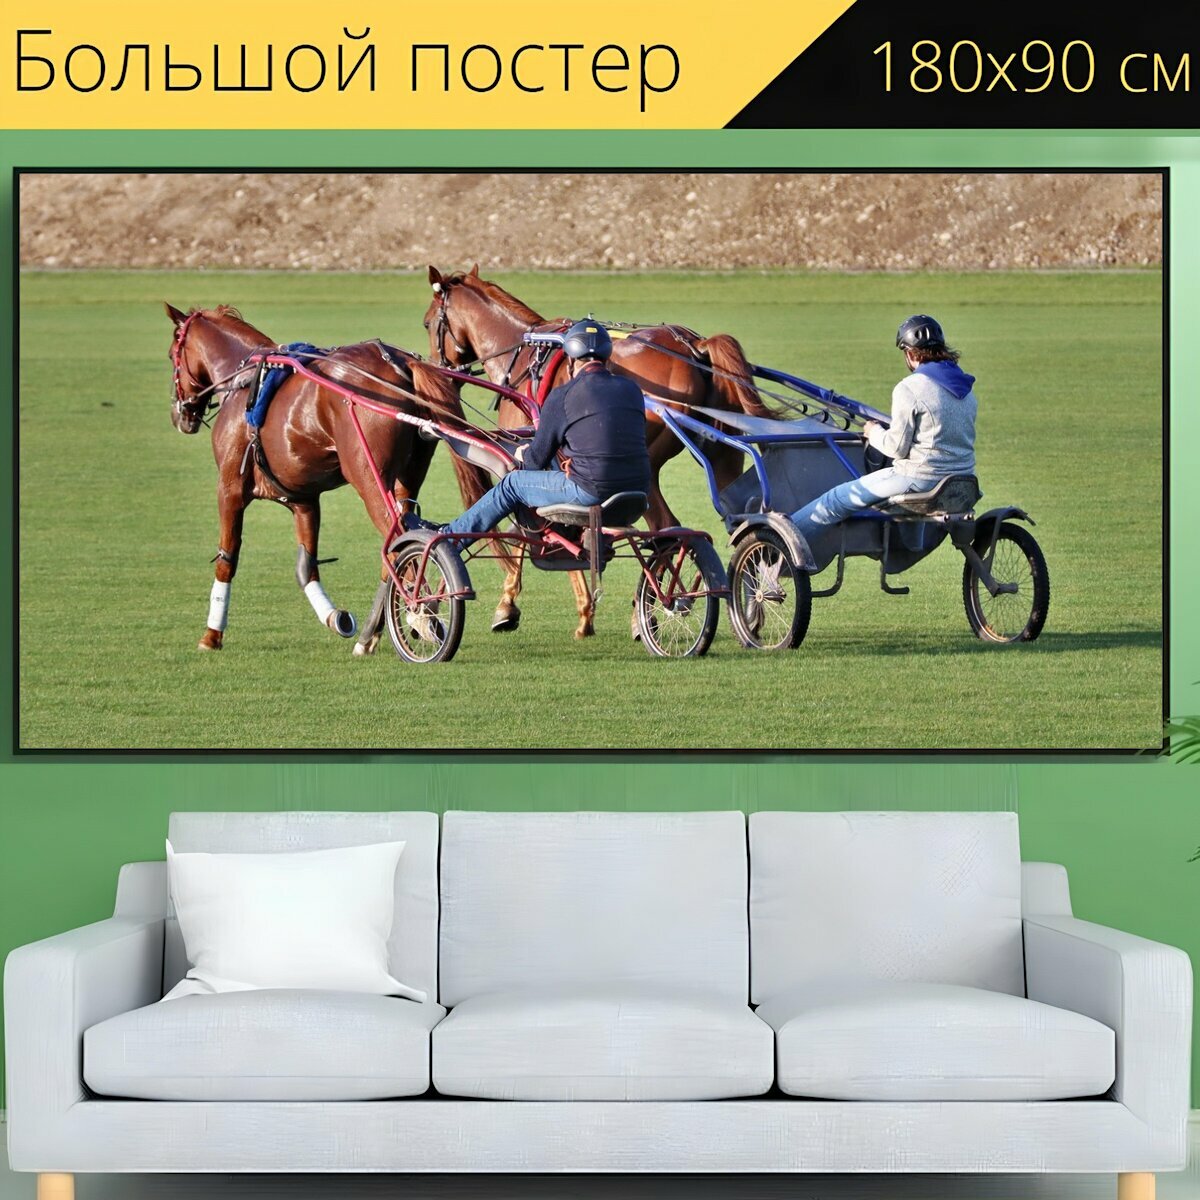 Большой постер "Лошади, лошадь, конный спорт" 180 x 90 см. для интерьера